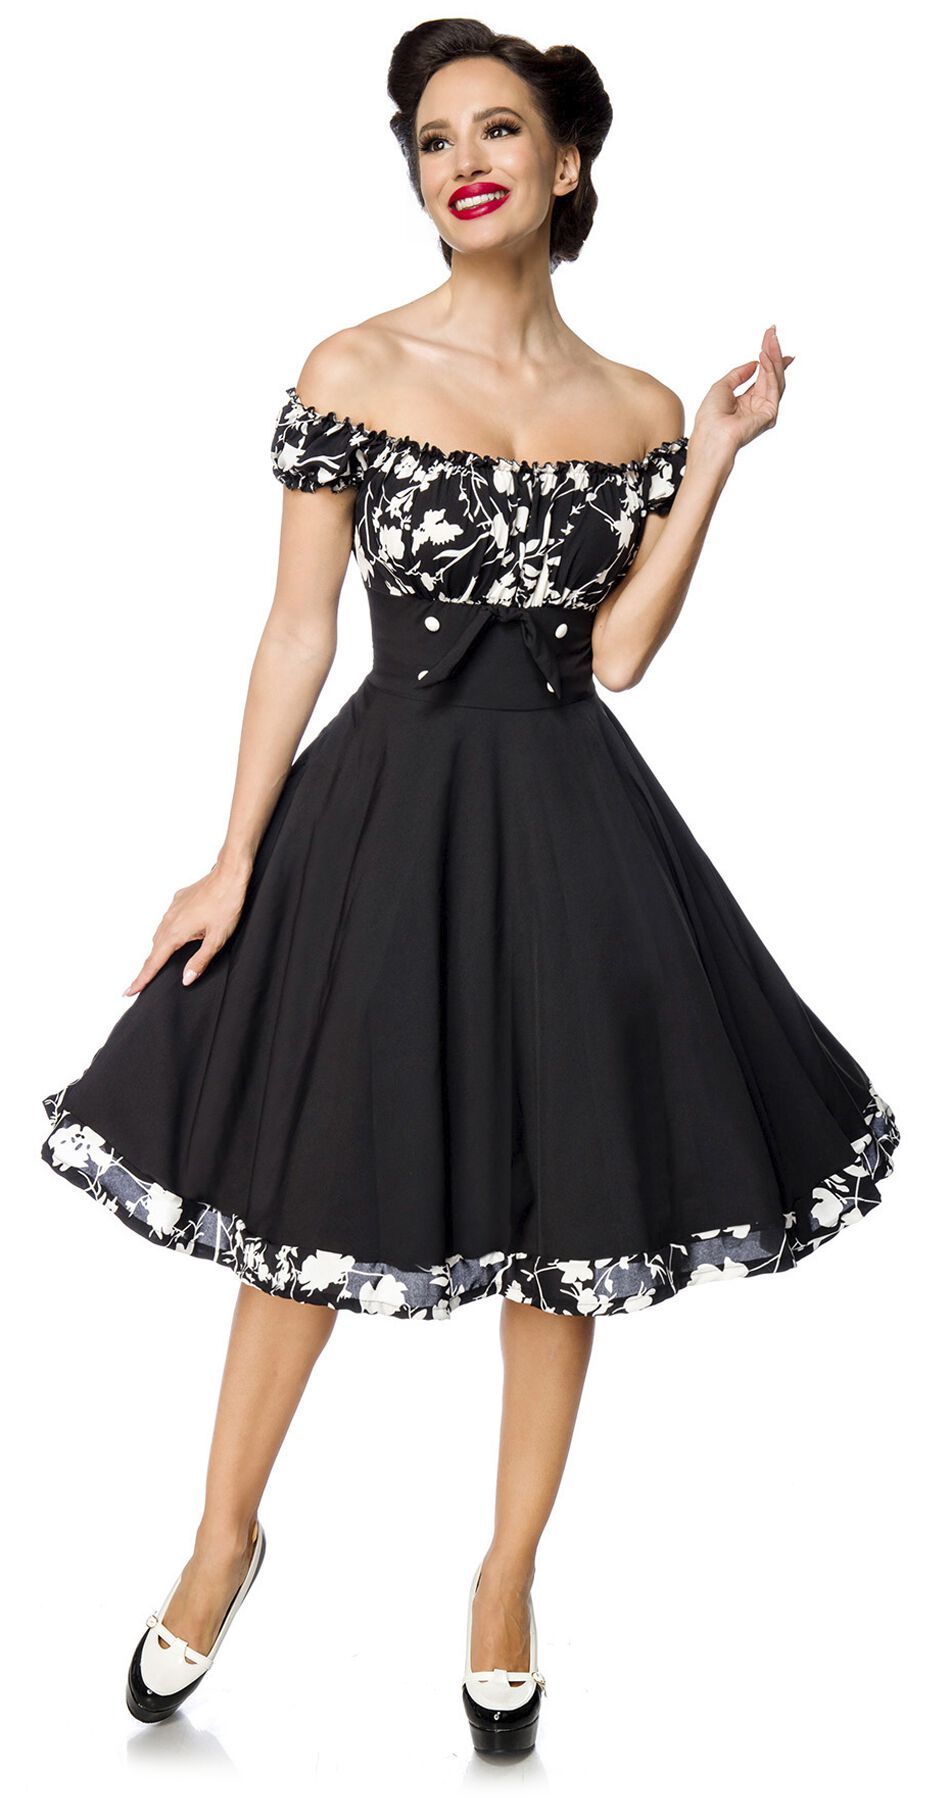 Belsira - Rockabilly Kleid knielang - Schulterfreies Swing-Kleid - S bis 4XL - für Damen - Größe 3XL - schwarz/weiß